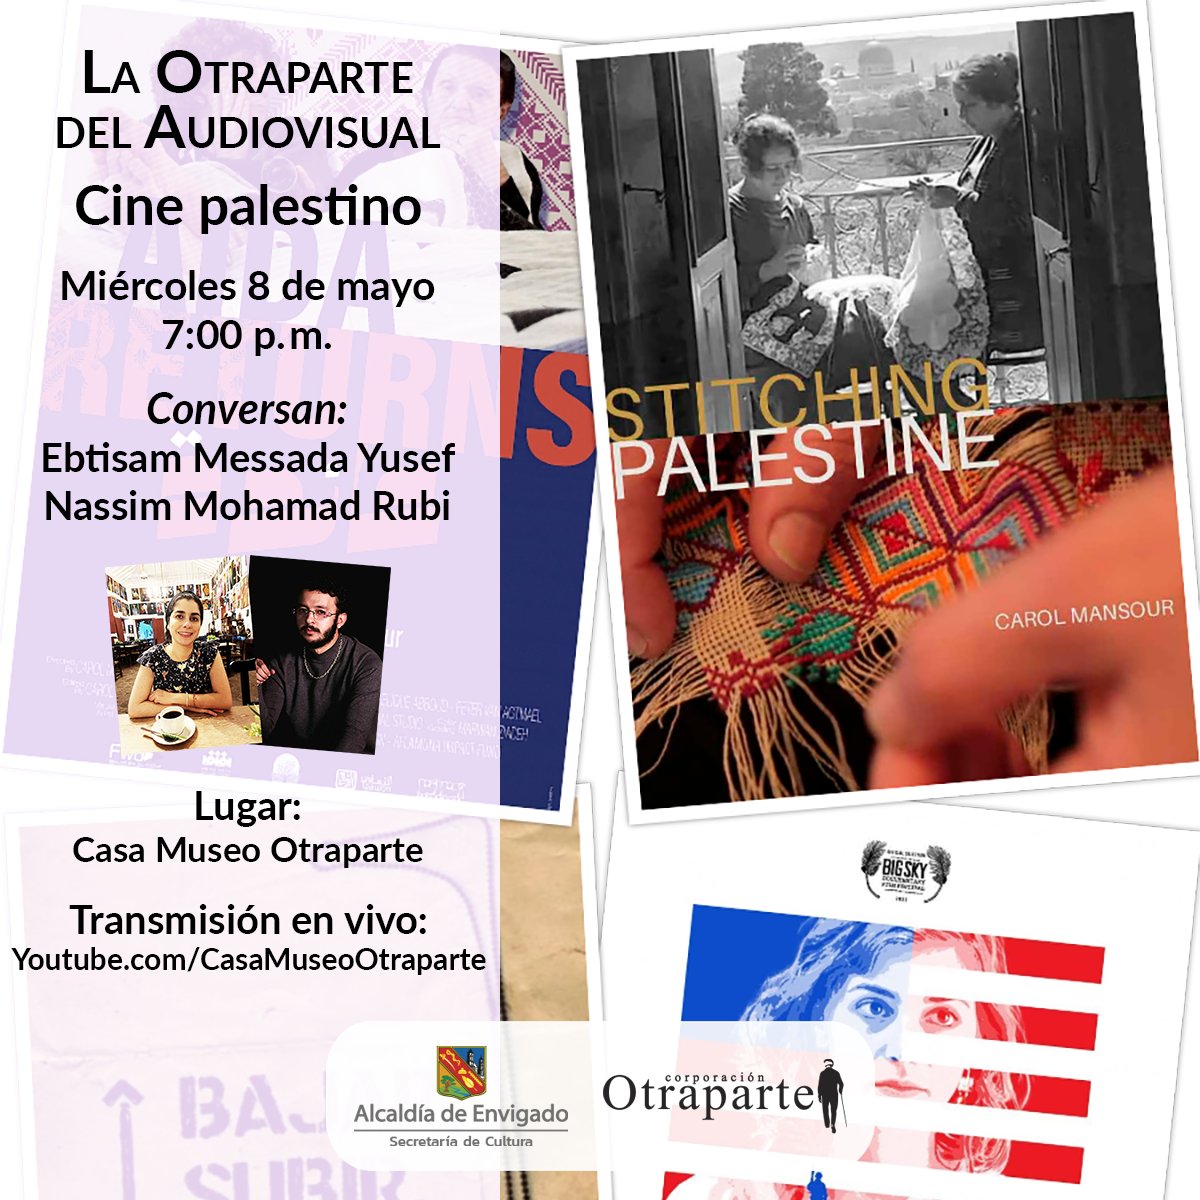 Miércoles 8 de mayo - (Presencial / Virtual) - 7:00 p.m. - Conversación sobre cine palestino en La Otraparte del Audiovisual: otraparte.org/agenda-cultura… youtube.com/watch?v=Qhh9xJ…